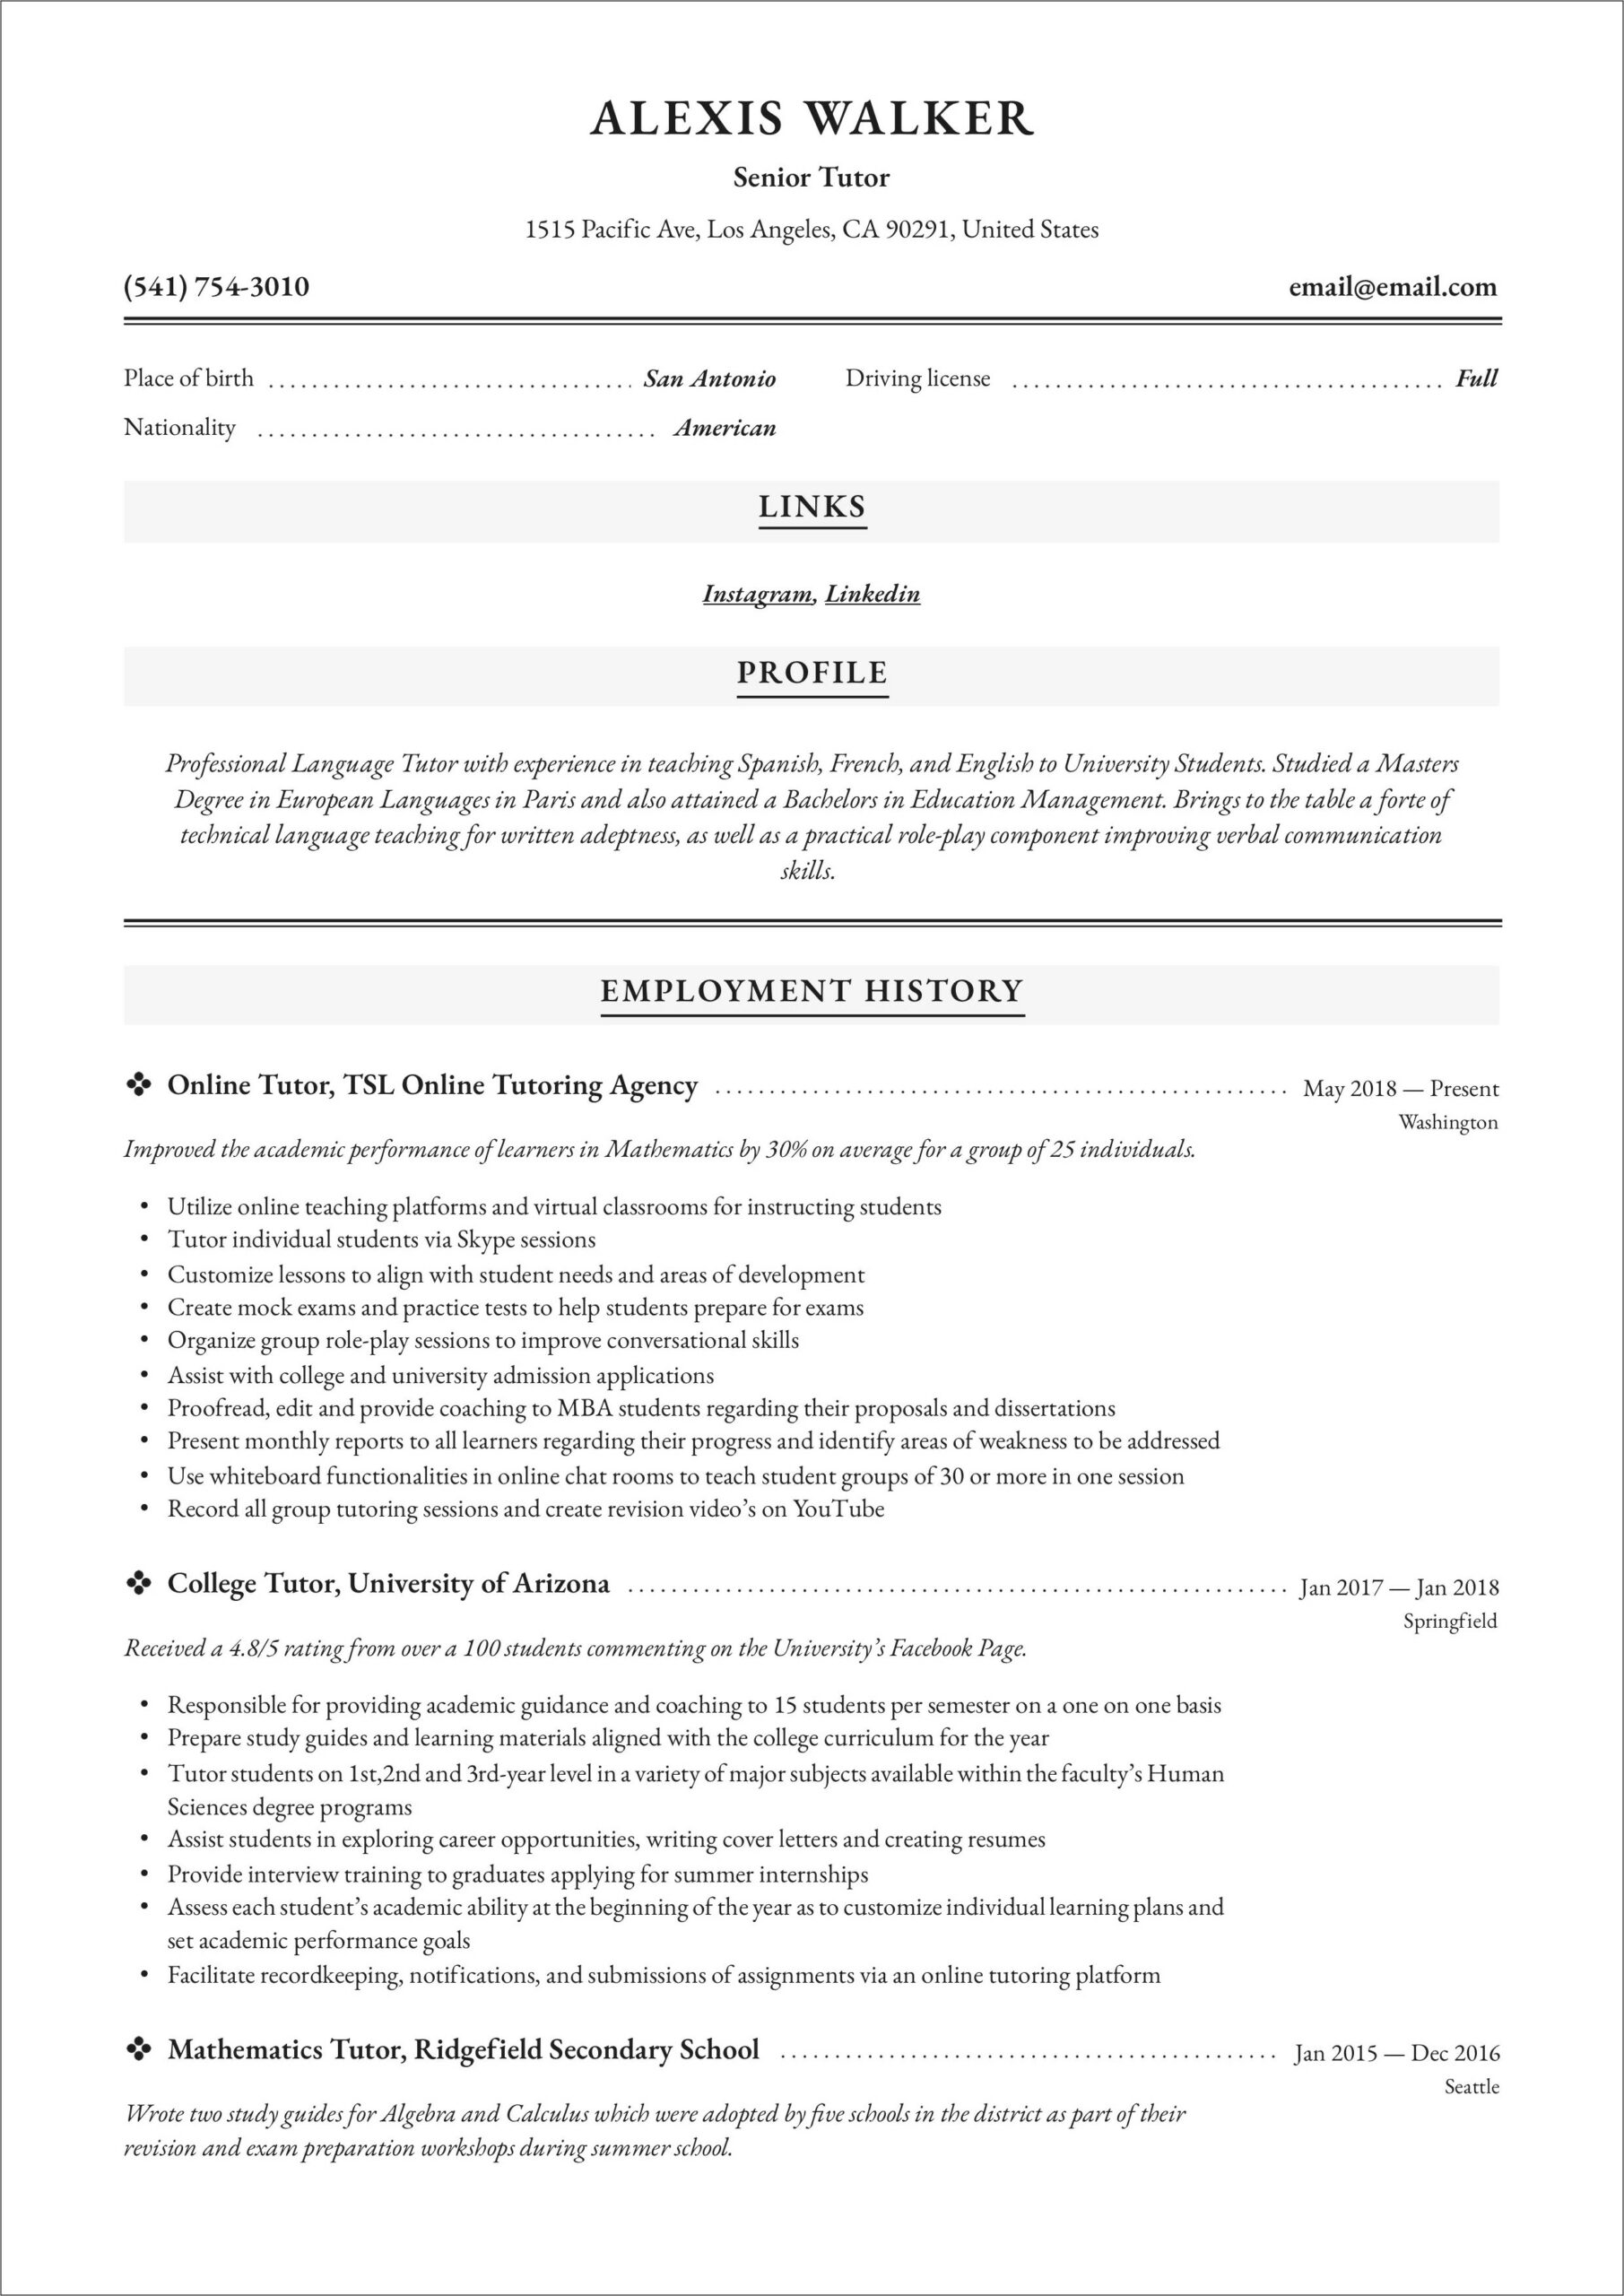 Resume Sample For A Tutor